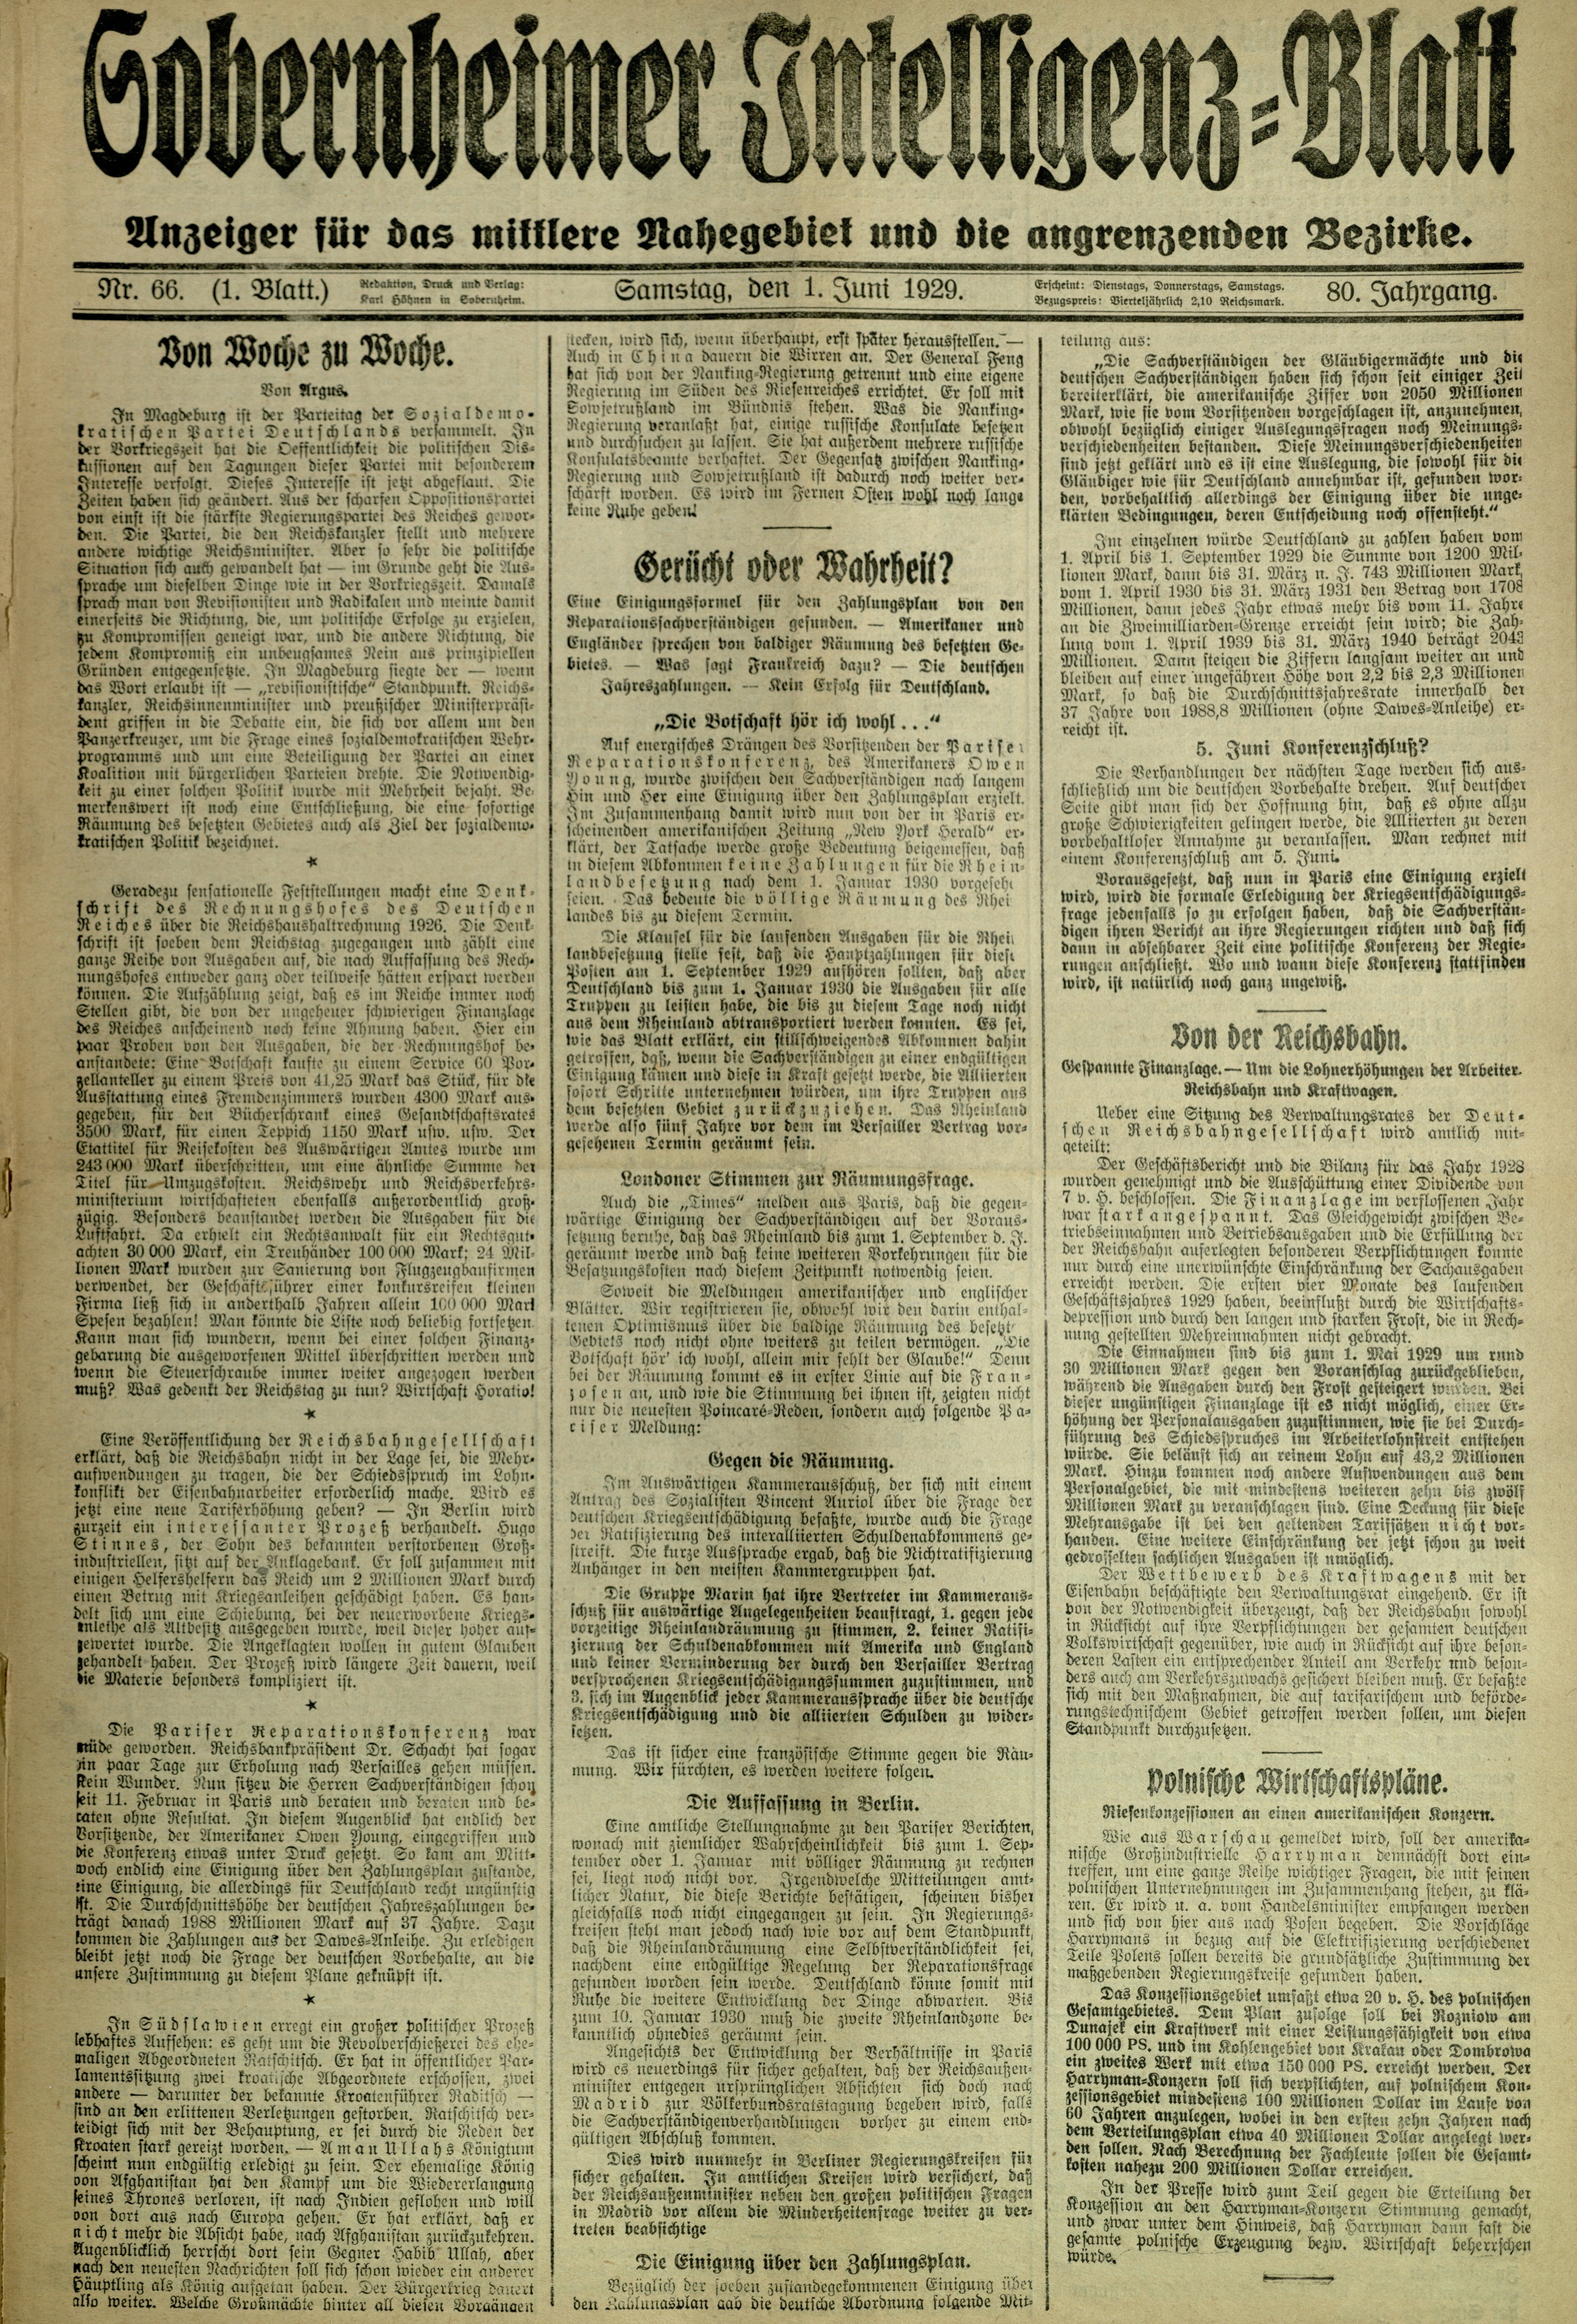 Zeitung: Sobernheimer Intelligenzblatt; Juni 1929, Jg. 80 Nr. 66 (Heimatmuseum Bad Sobernheim CC BY-NC-SA)